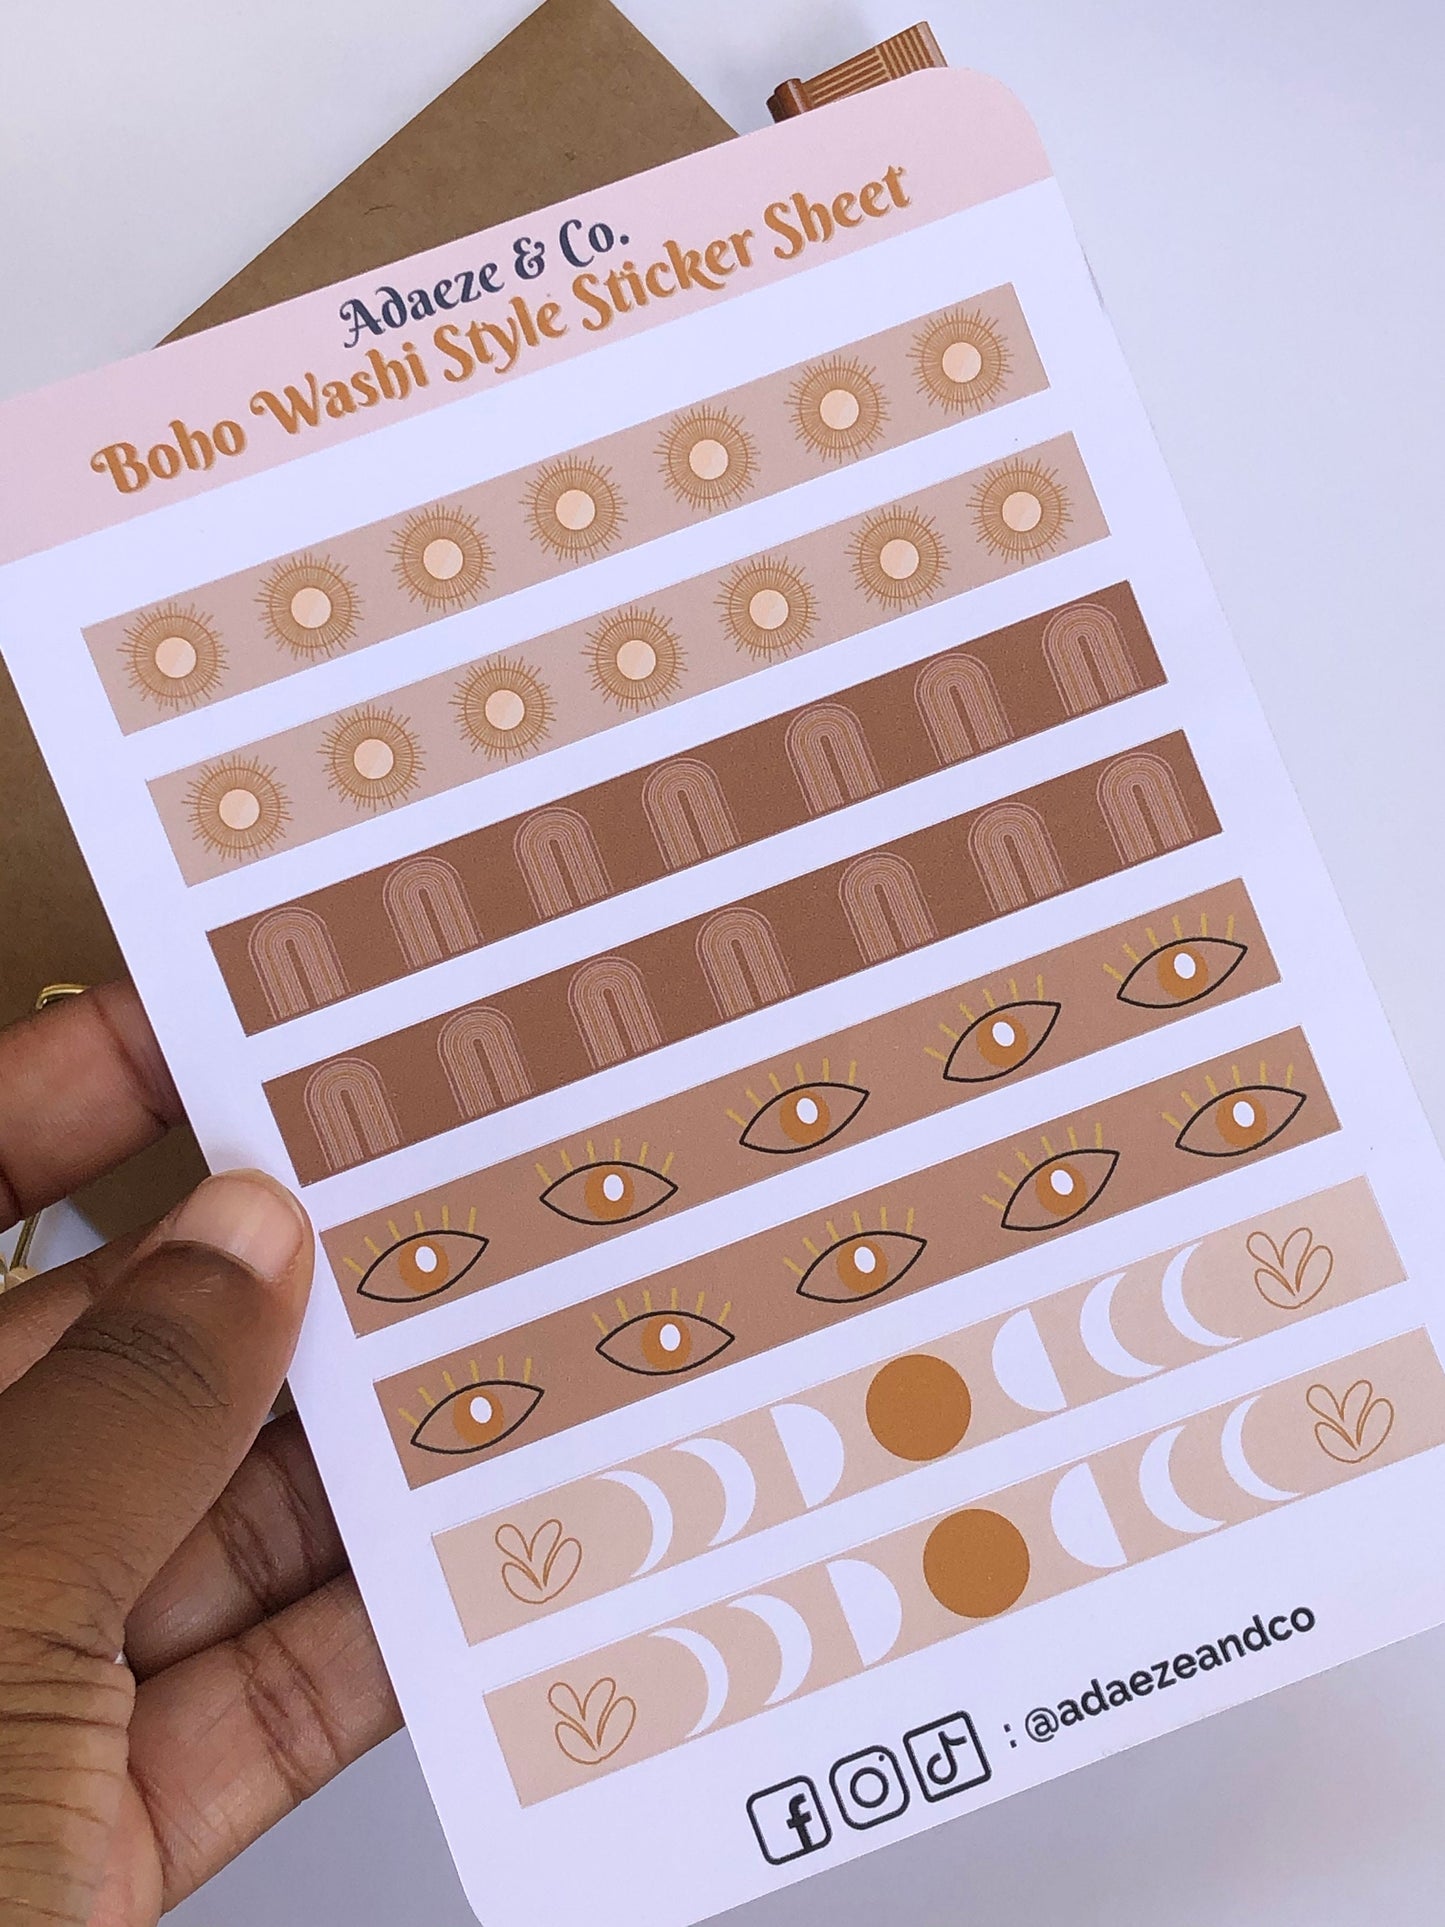 Boho Washi Style Sticker Sheet